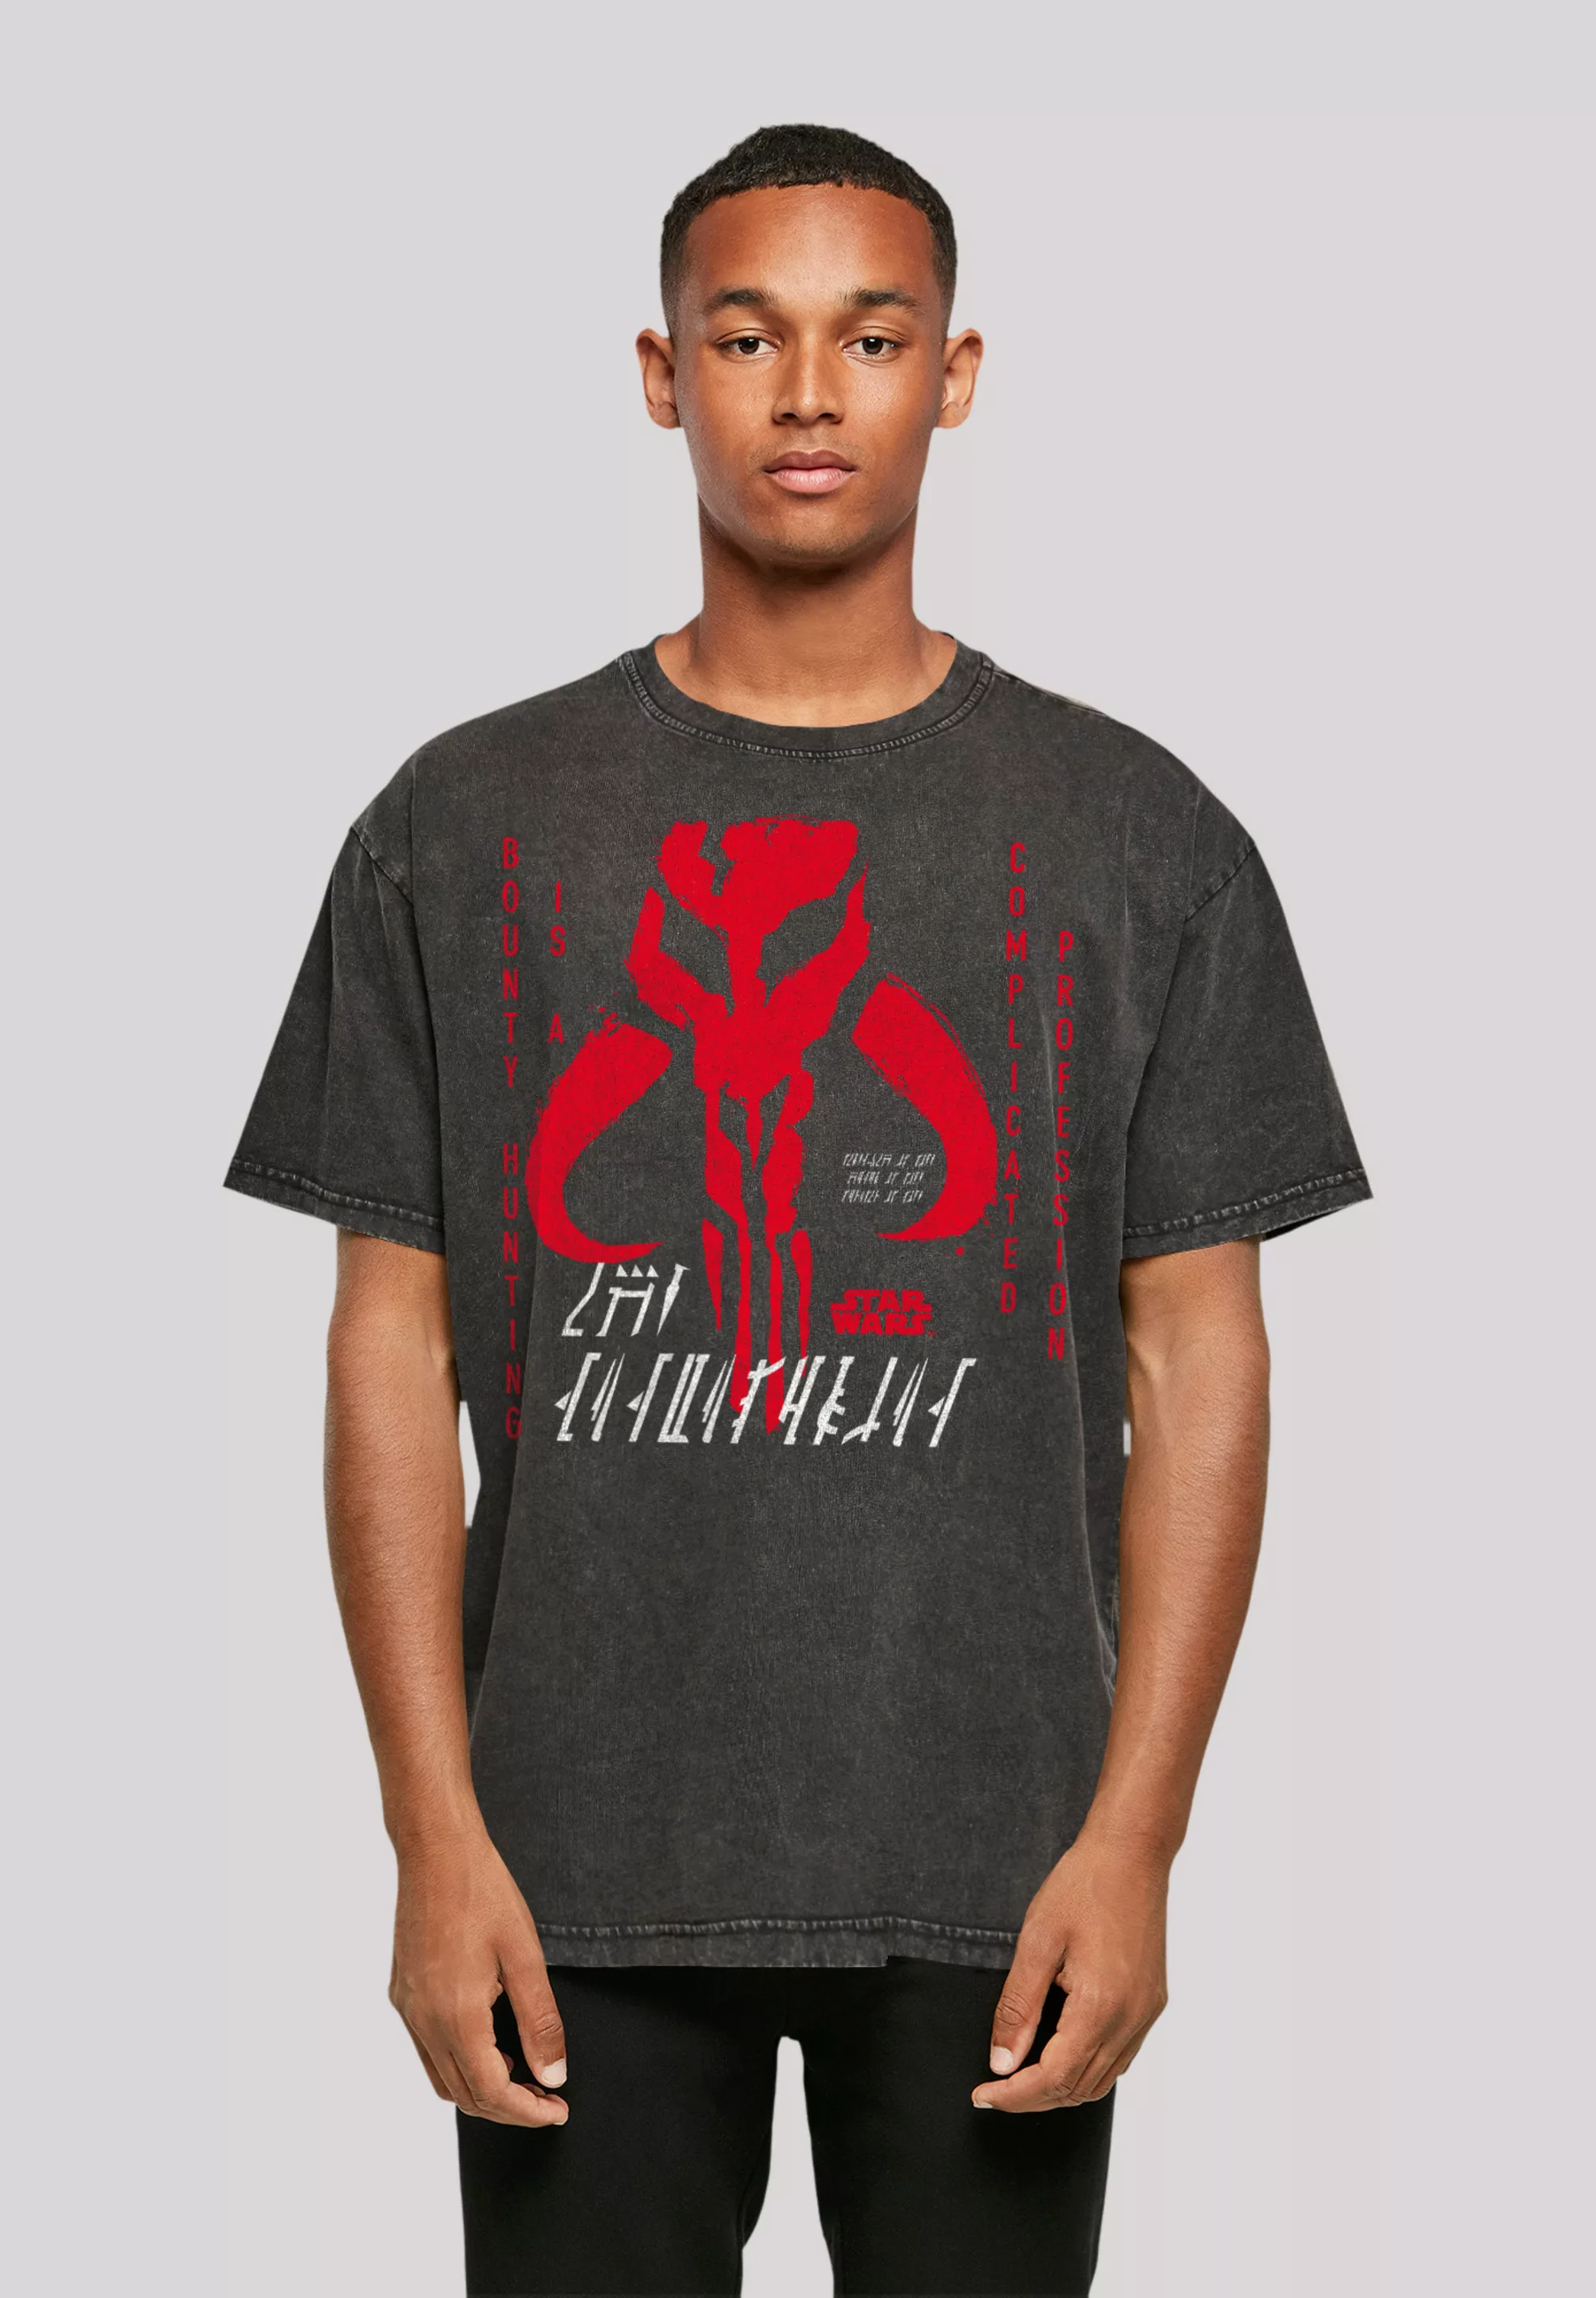 F4NT4STIC T-Shirt "Star Wars The Mandalorian Complicated Profession", Premi günstig online kaufen